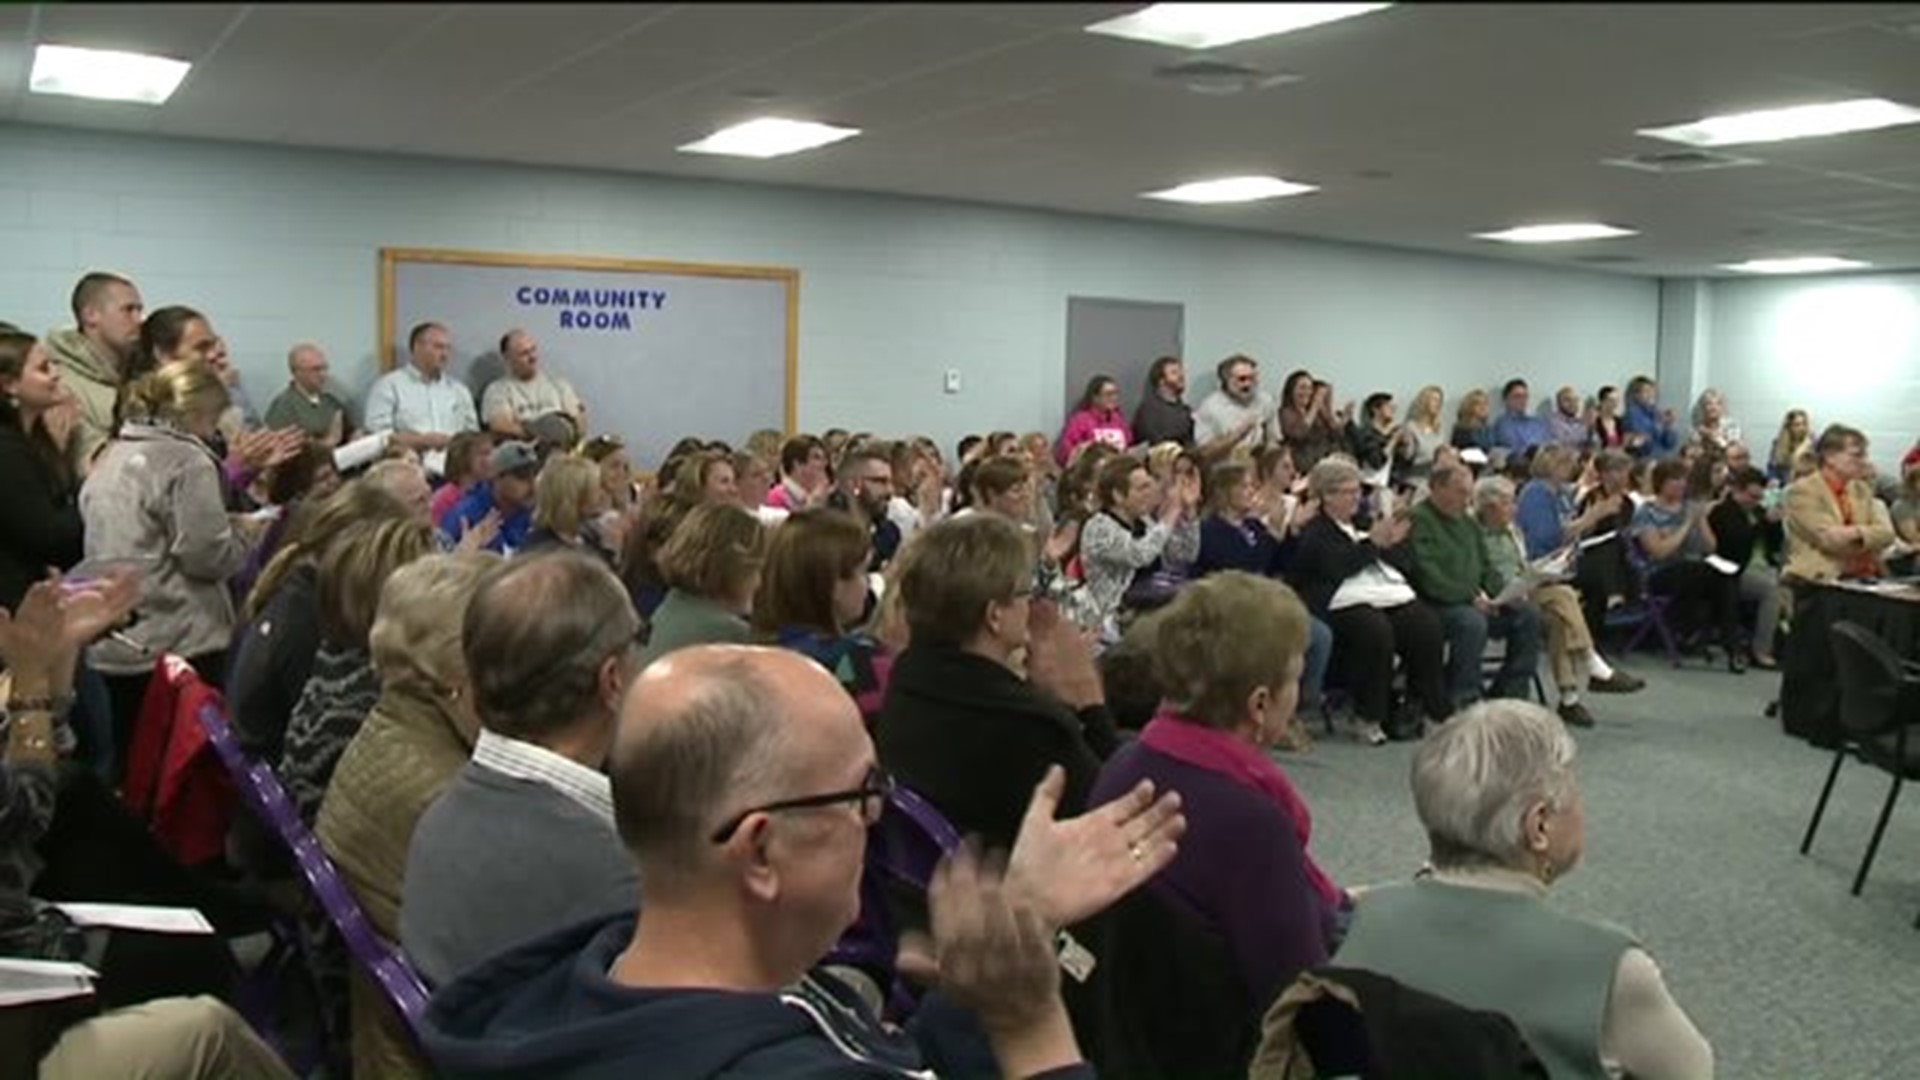 Teacher Strike Averted in Danville, Crowd At Meeting Cheers